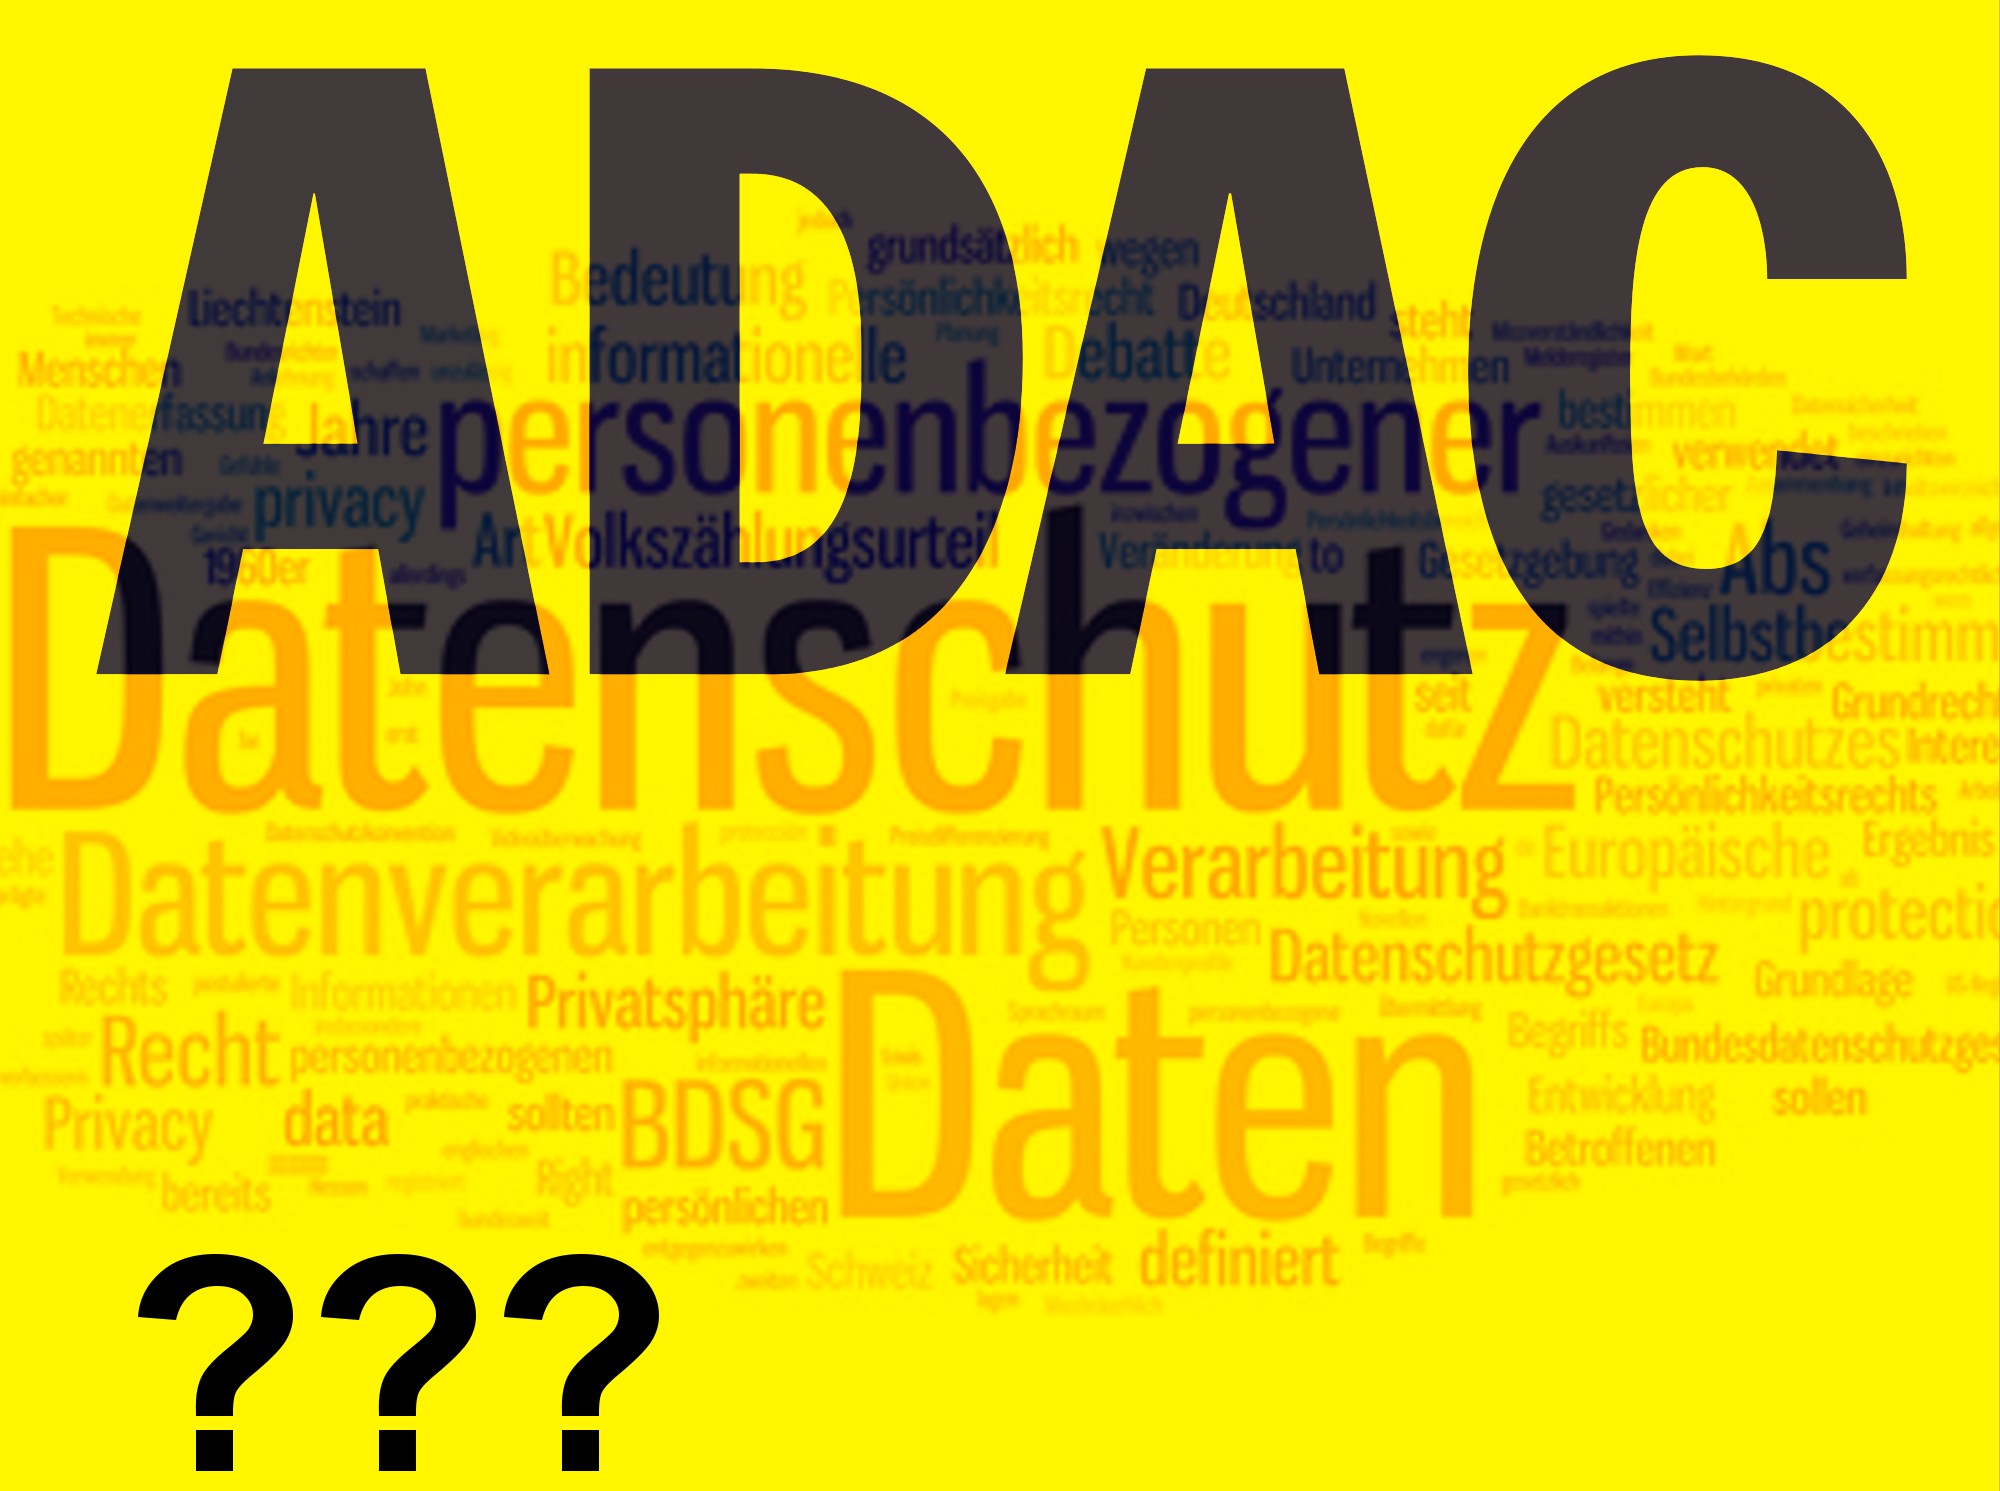 ADAC Datenschutz